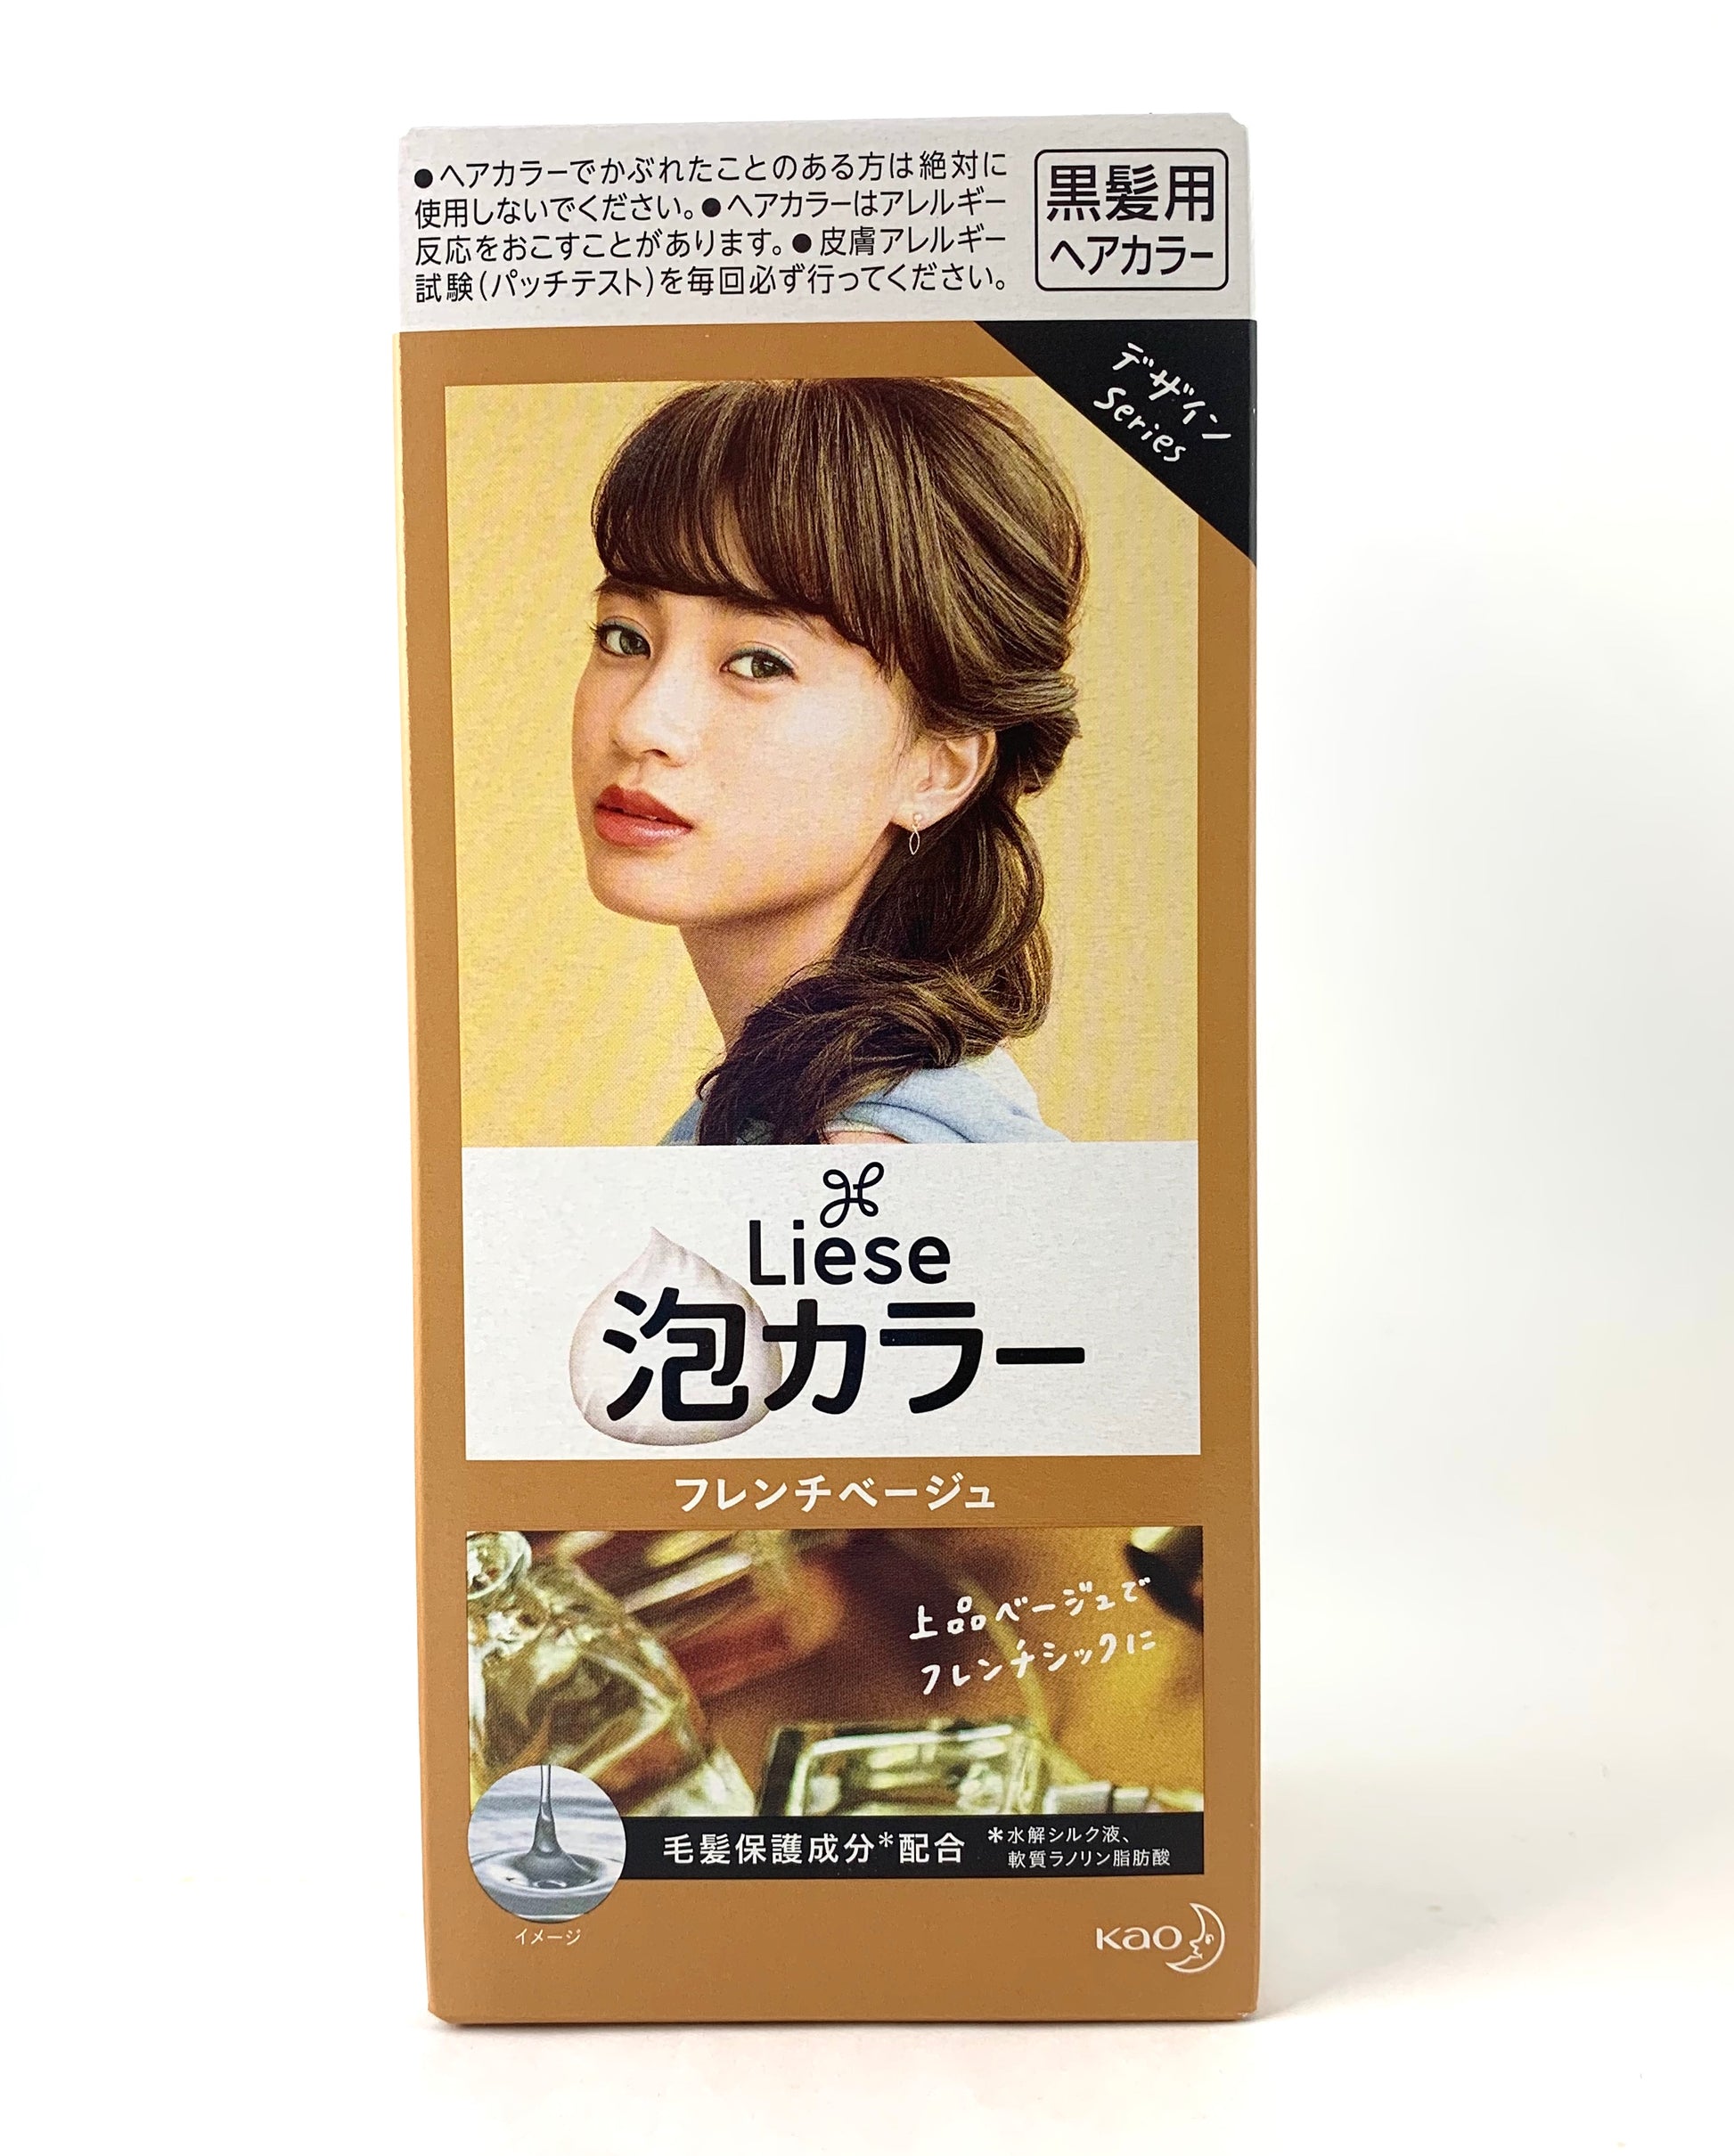 Final Sale: Kao Japan Liese Prettia Soft Bubble Hair Color (Various Colors).